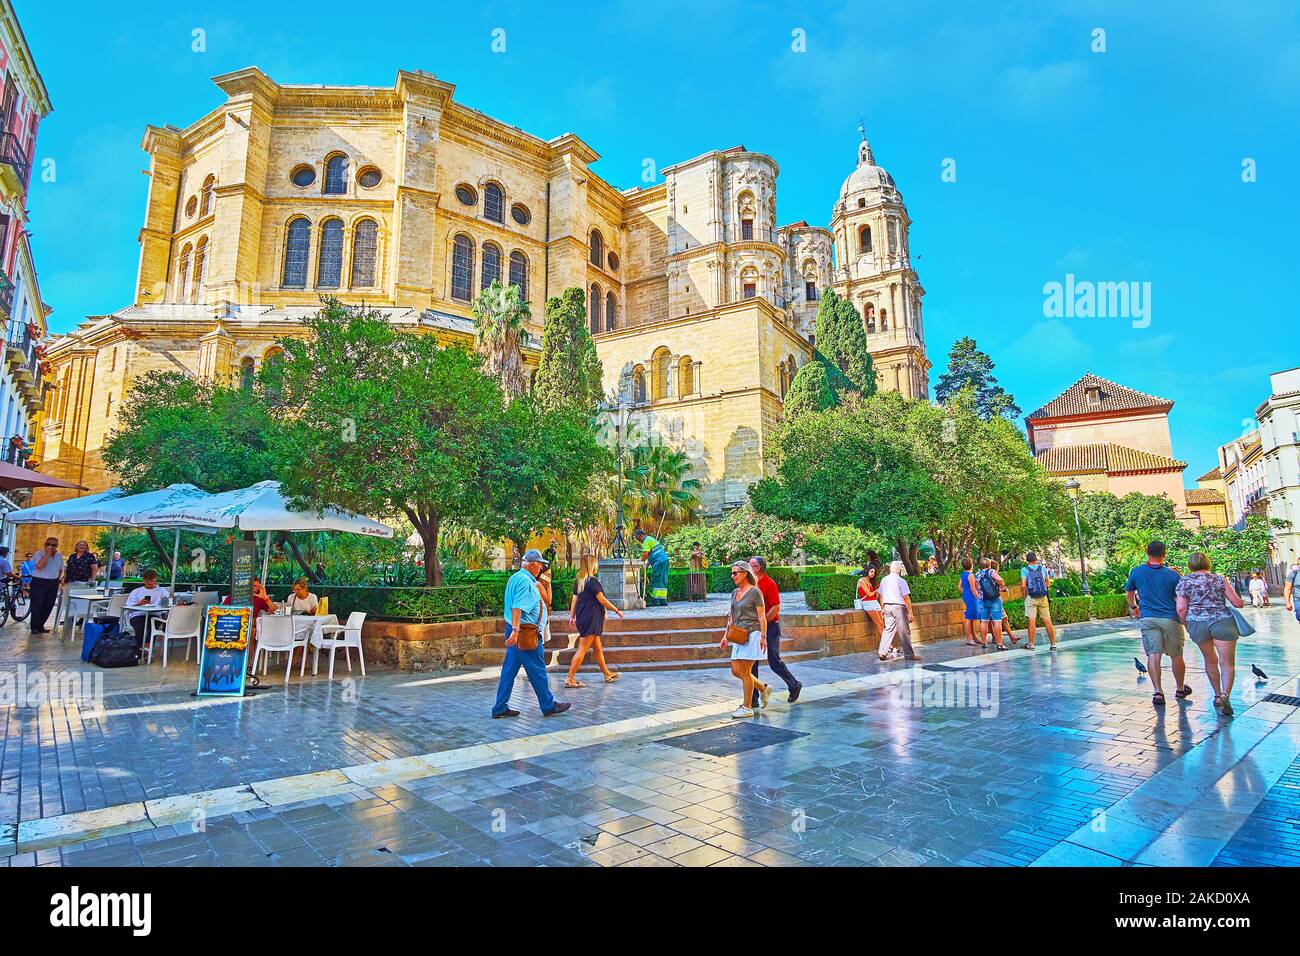 MALAGA, SPANIEN - 26. SEPTEMBER 2019: Die mittelalterlichen Basilika Kathedrale von Málaga mit üppigen grünen Formschnitt Garten im Vordergrund, am 26. September Stockfoto